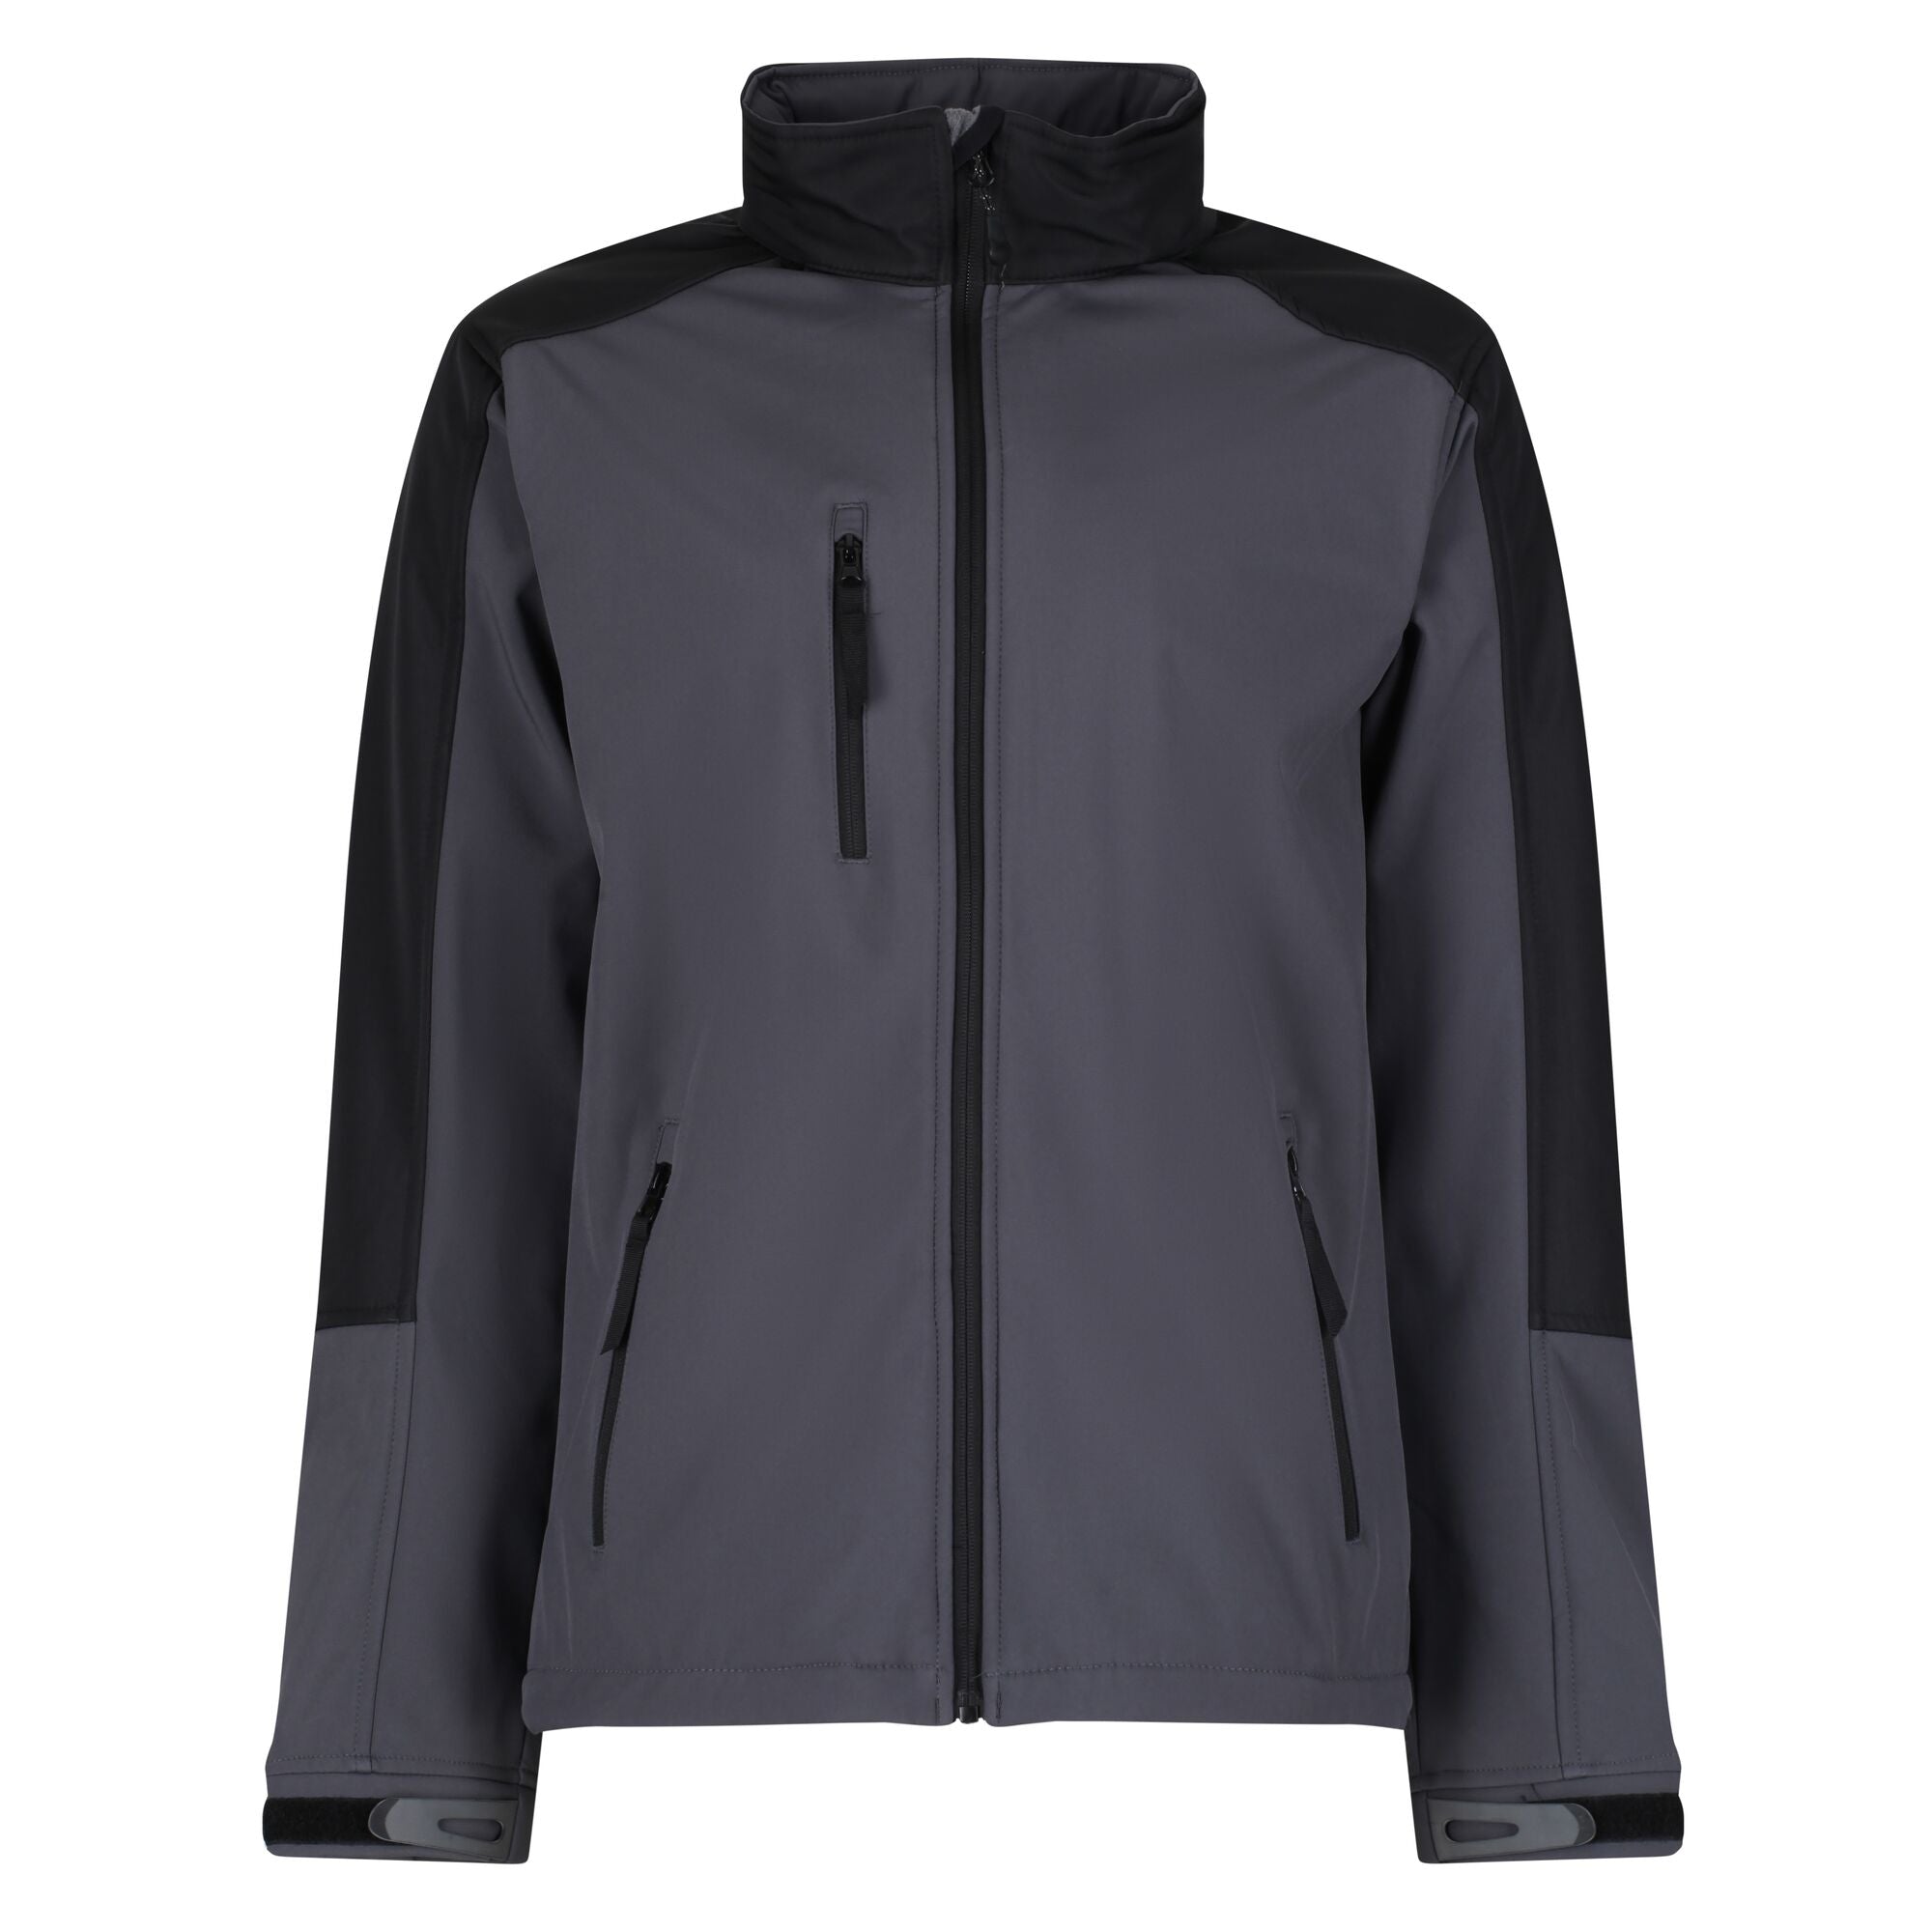 Regatta Hydroforce Softshell Jacket - Seal Grey/Black